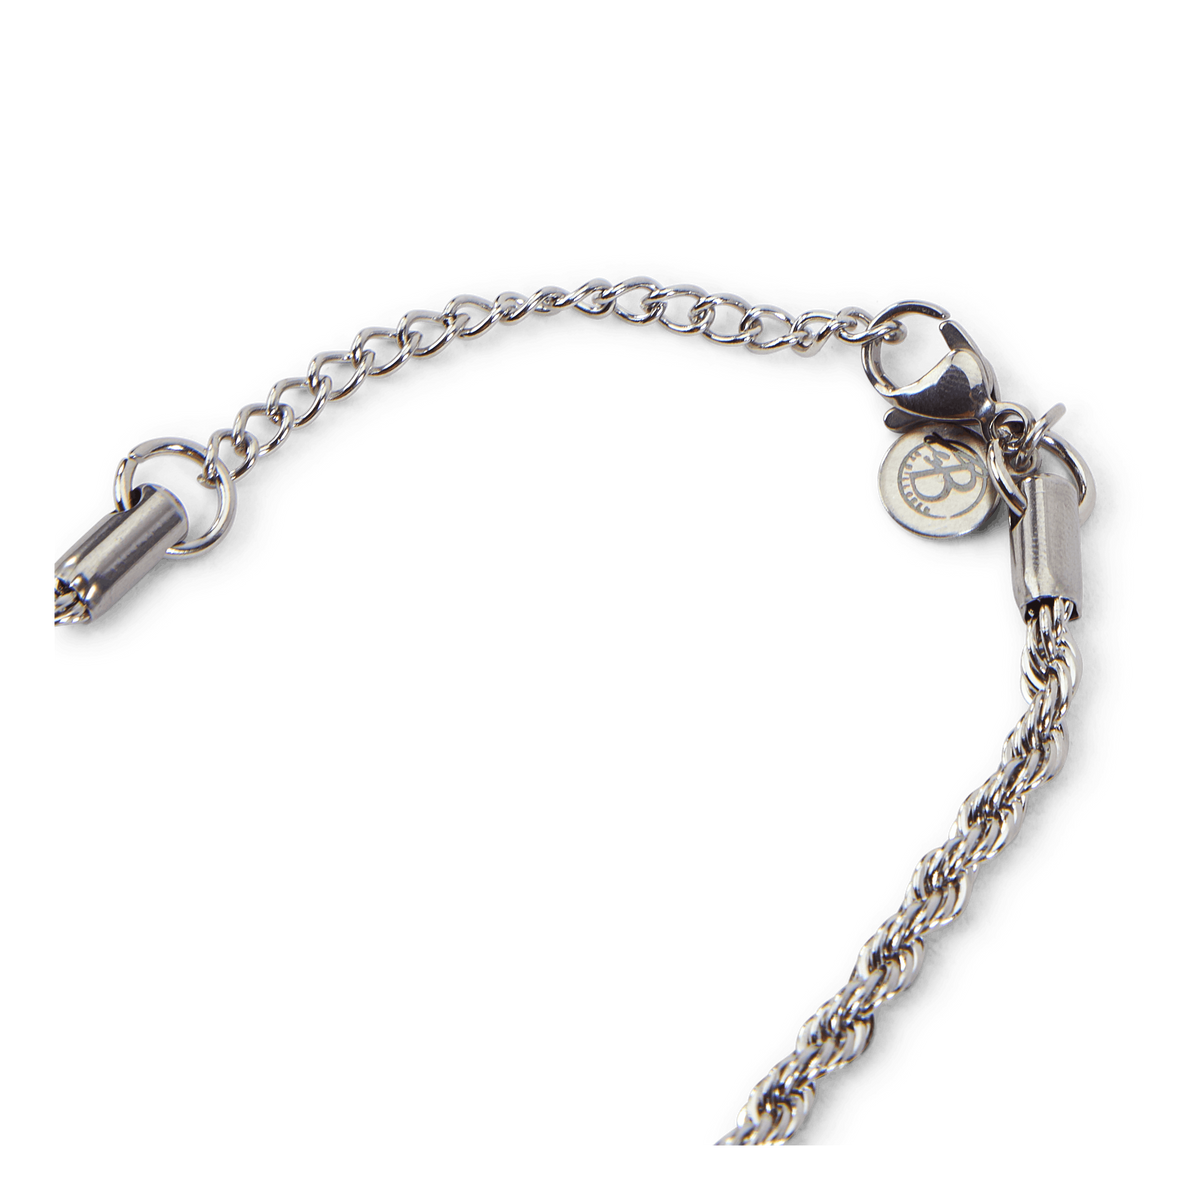 Necklace Steel Silver Steel